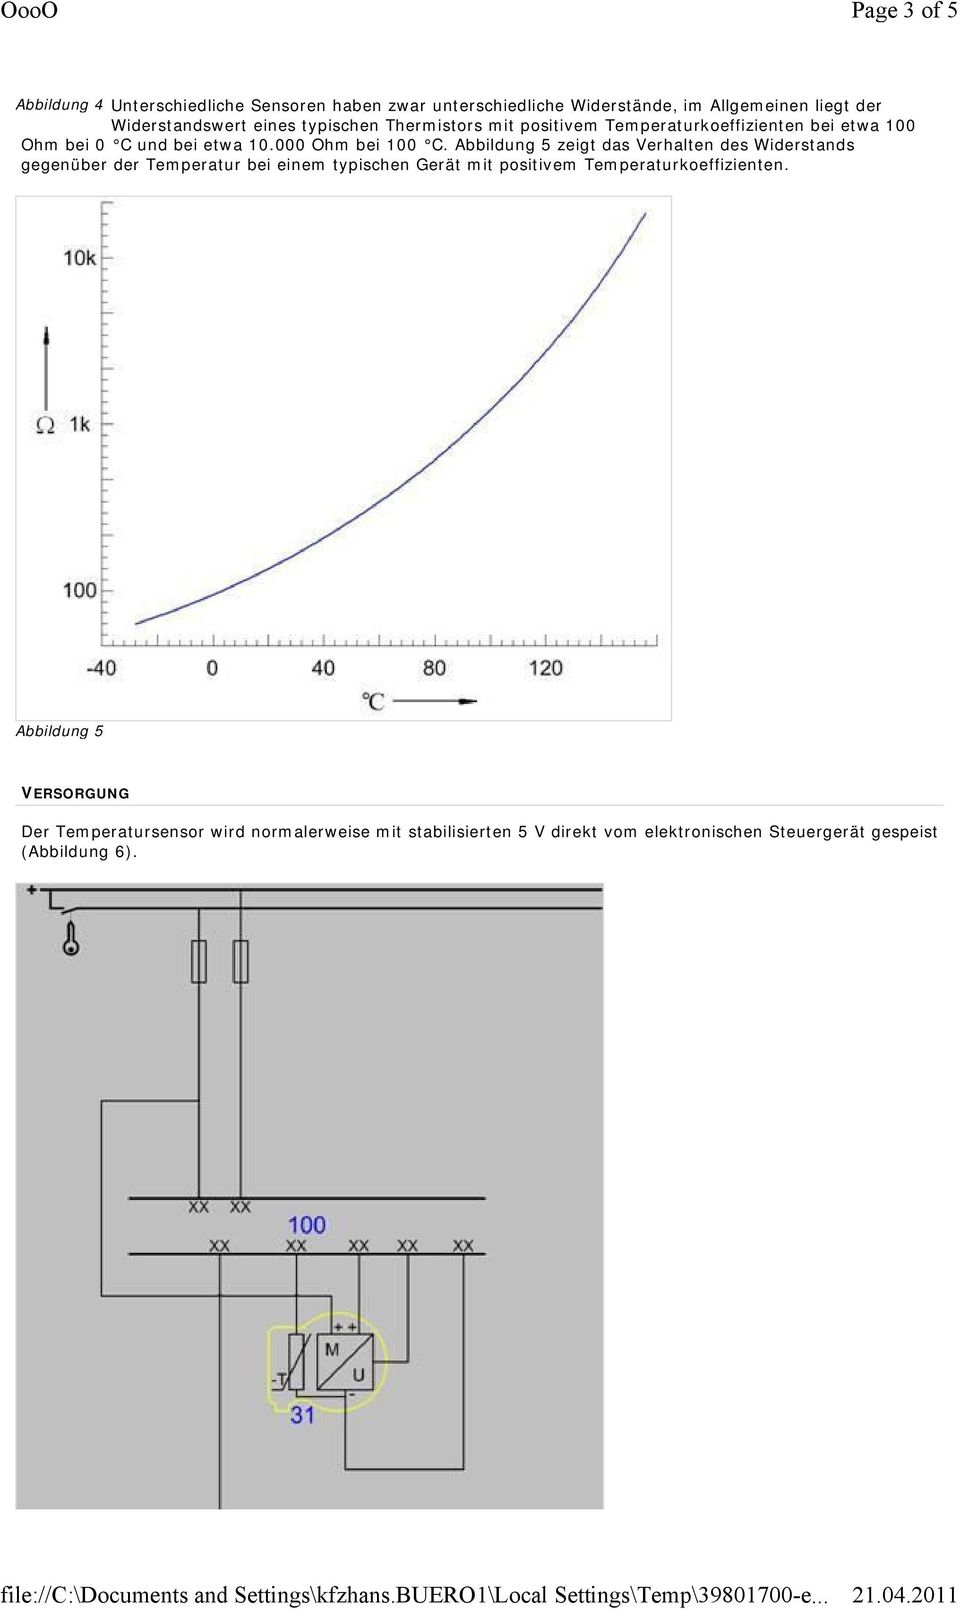 Abbildung 5 zeigt das Verhalten des Widerstands gegenüber der Temperatur bei einem typischen Gerät mit positivem